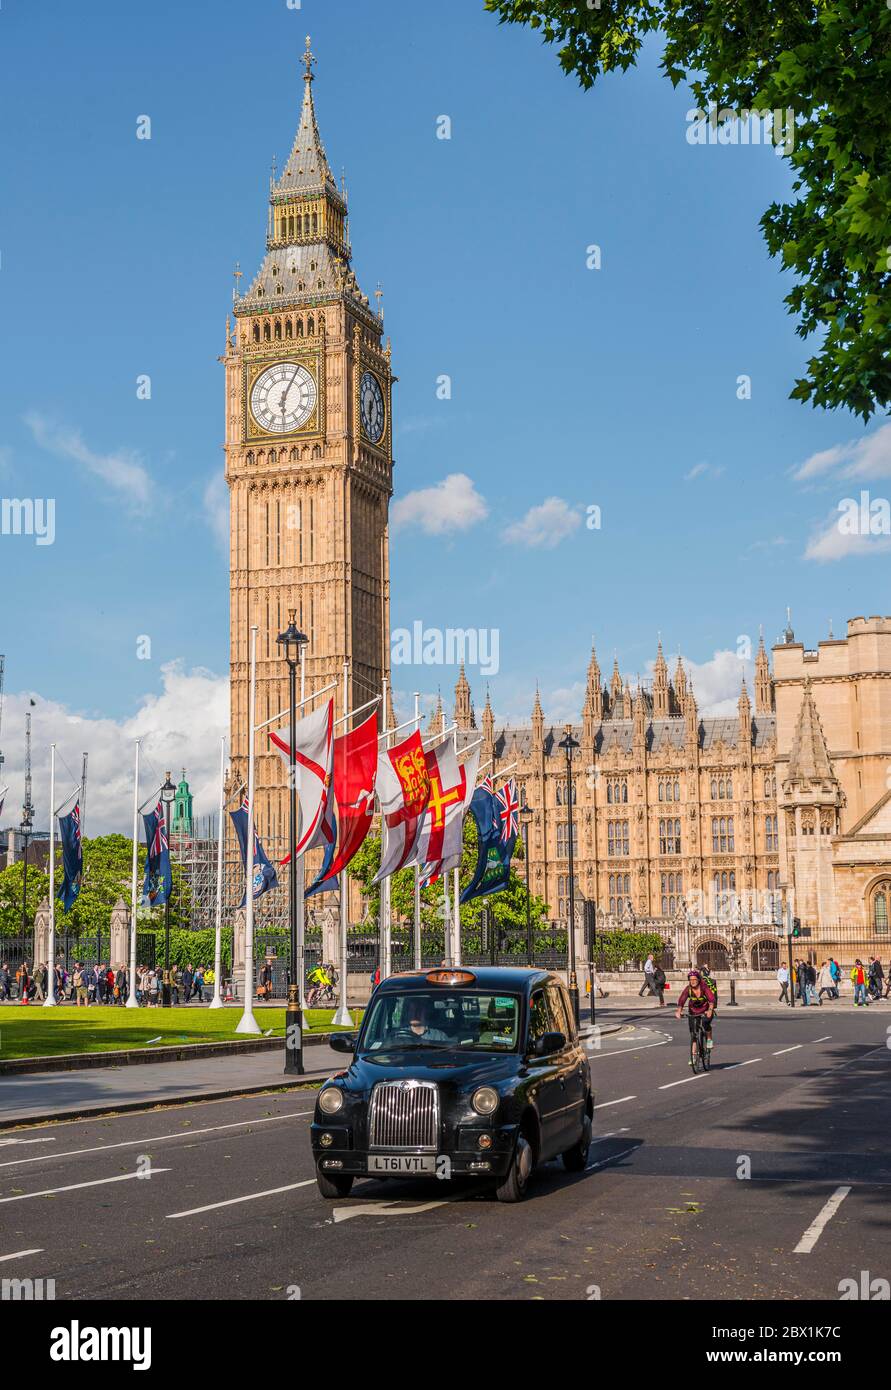 Taxi Cab, Palais de Westminster, chambres du Parlement, Big Ben, Cité de Westminster, Londres, Angleterre, Royaume-Uni Banque D'Images